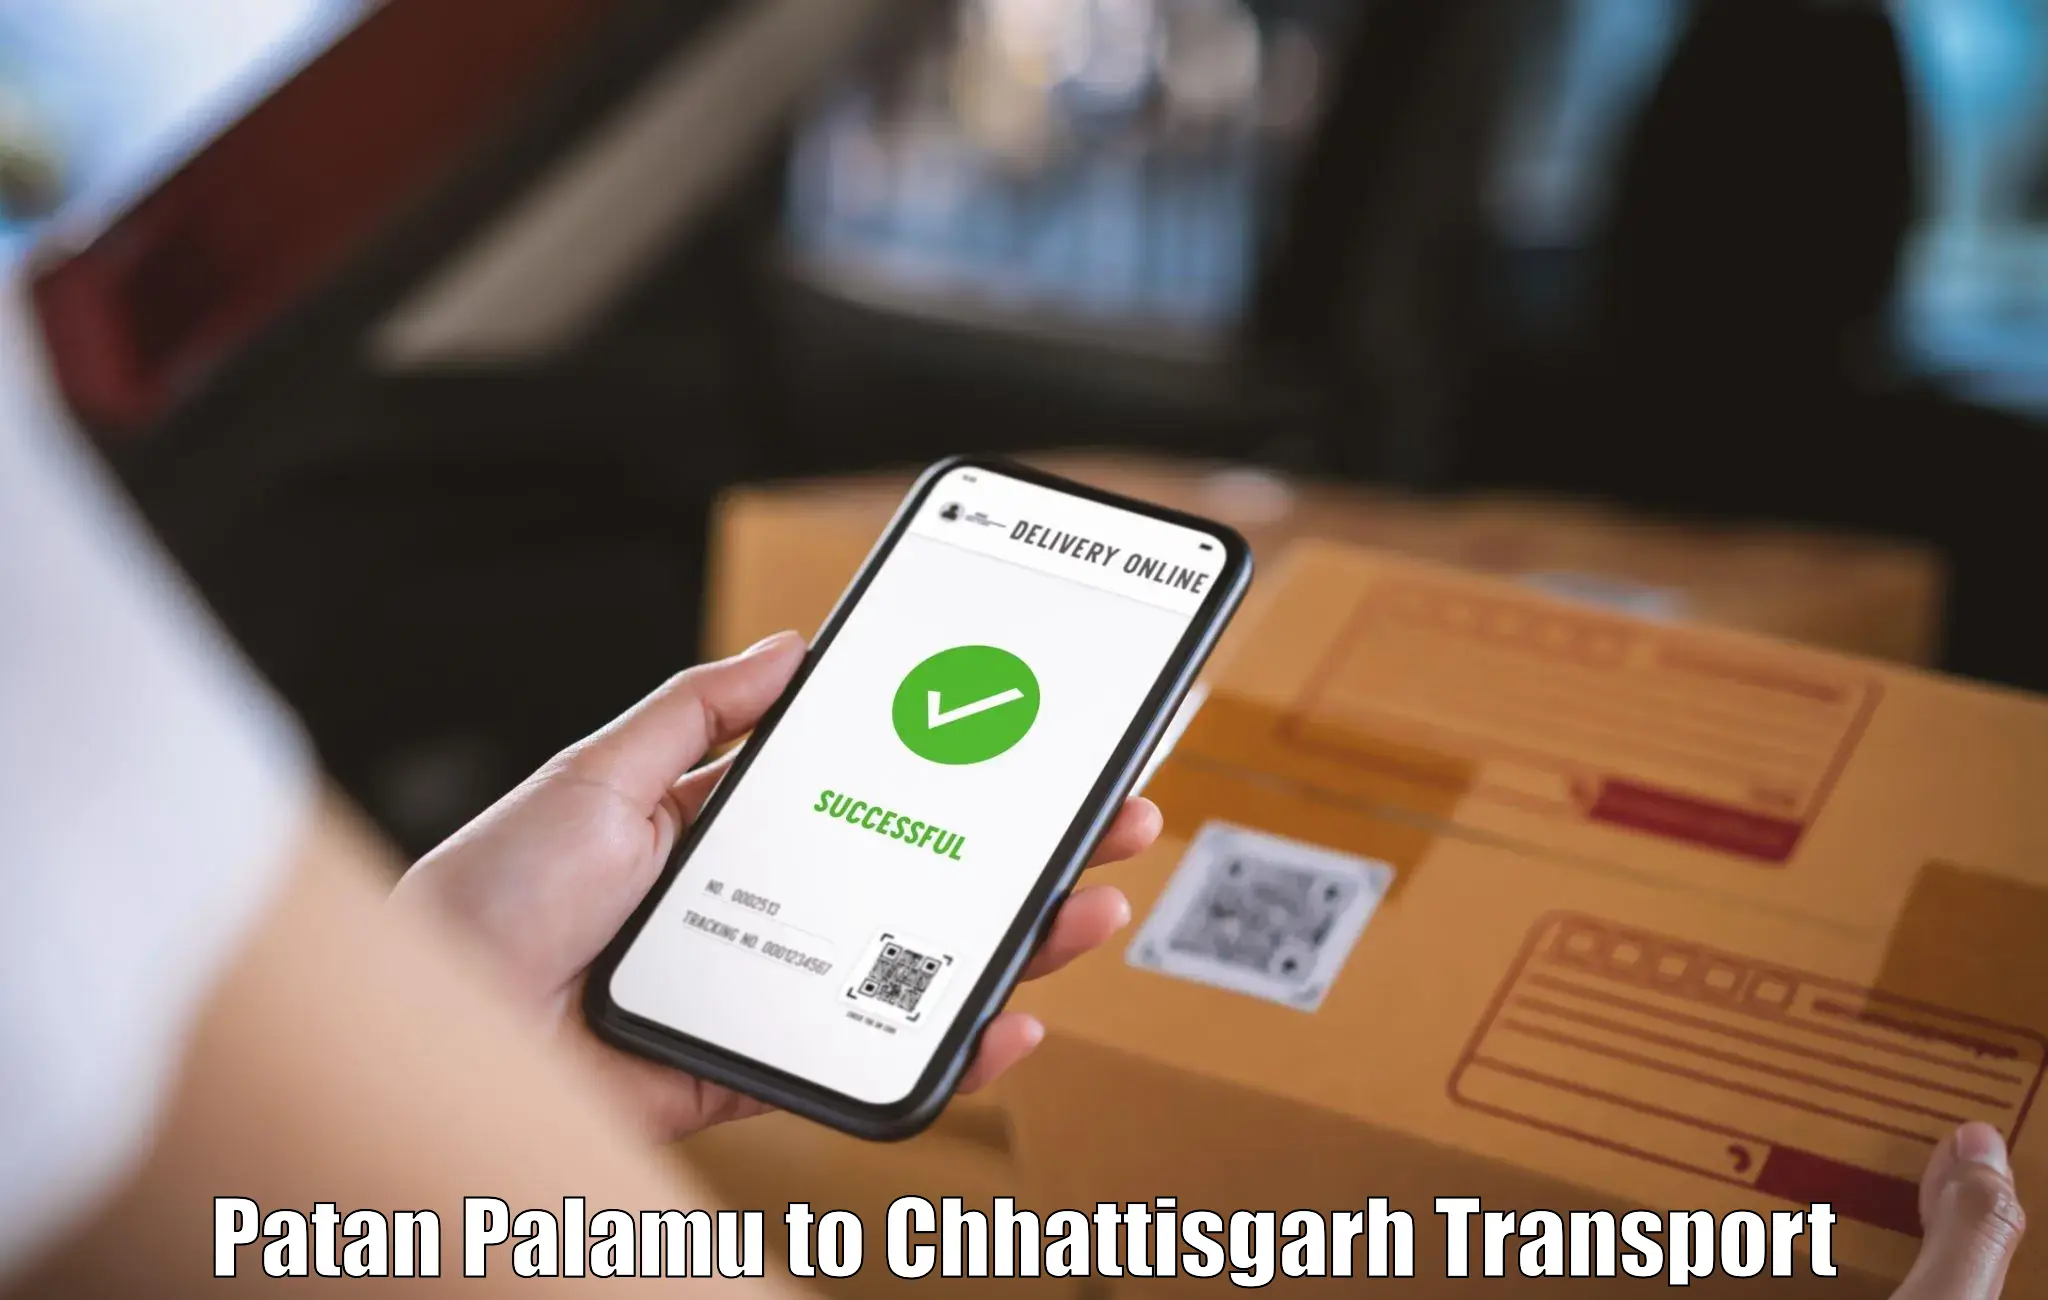 Intercity transport Patan Palamu to Patna Chhattisgarh